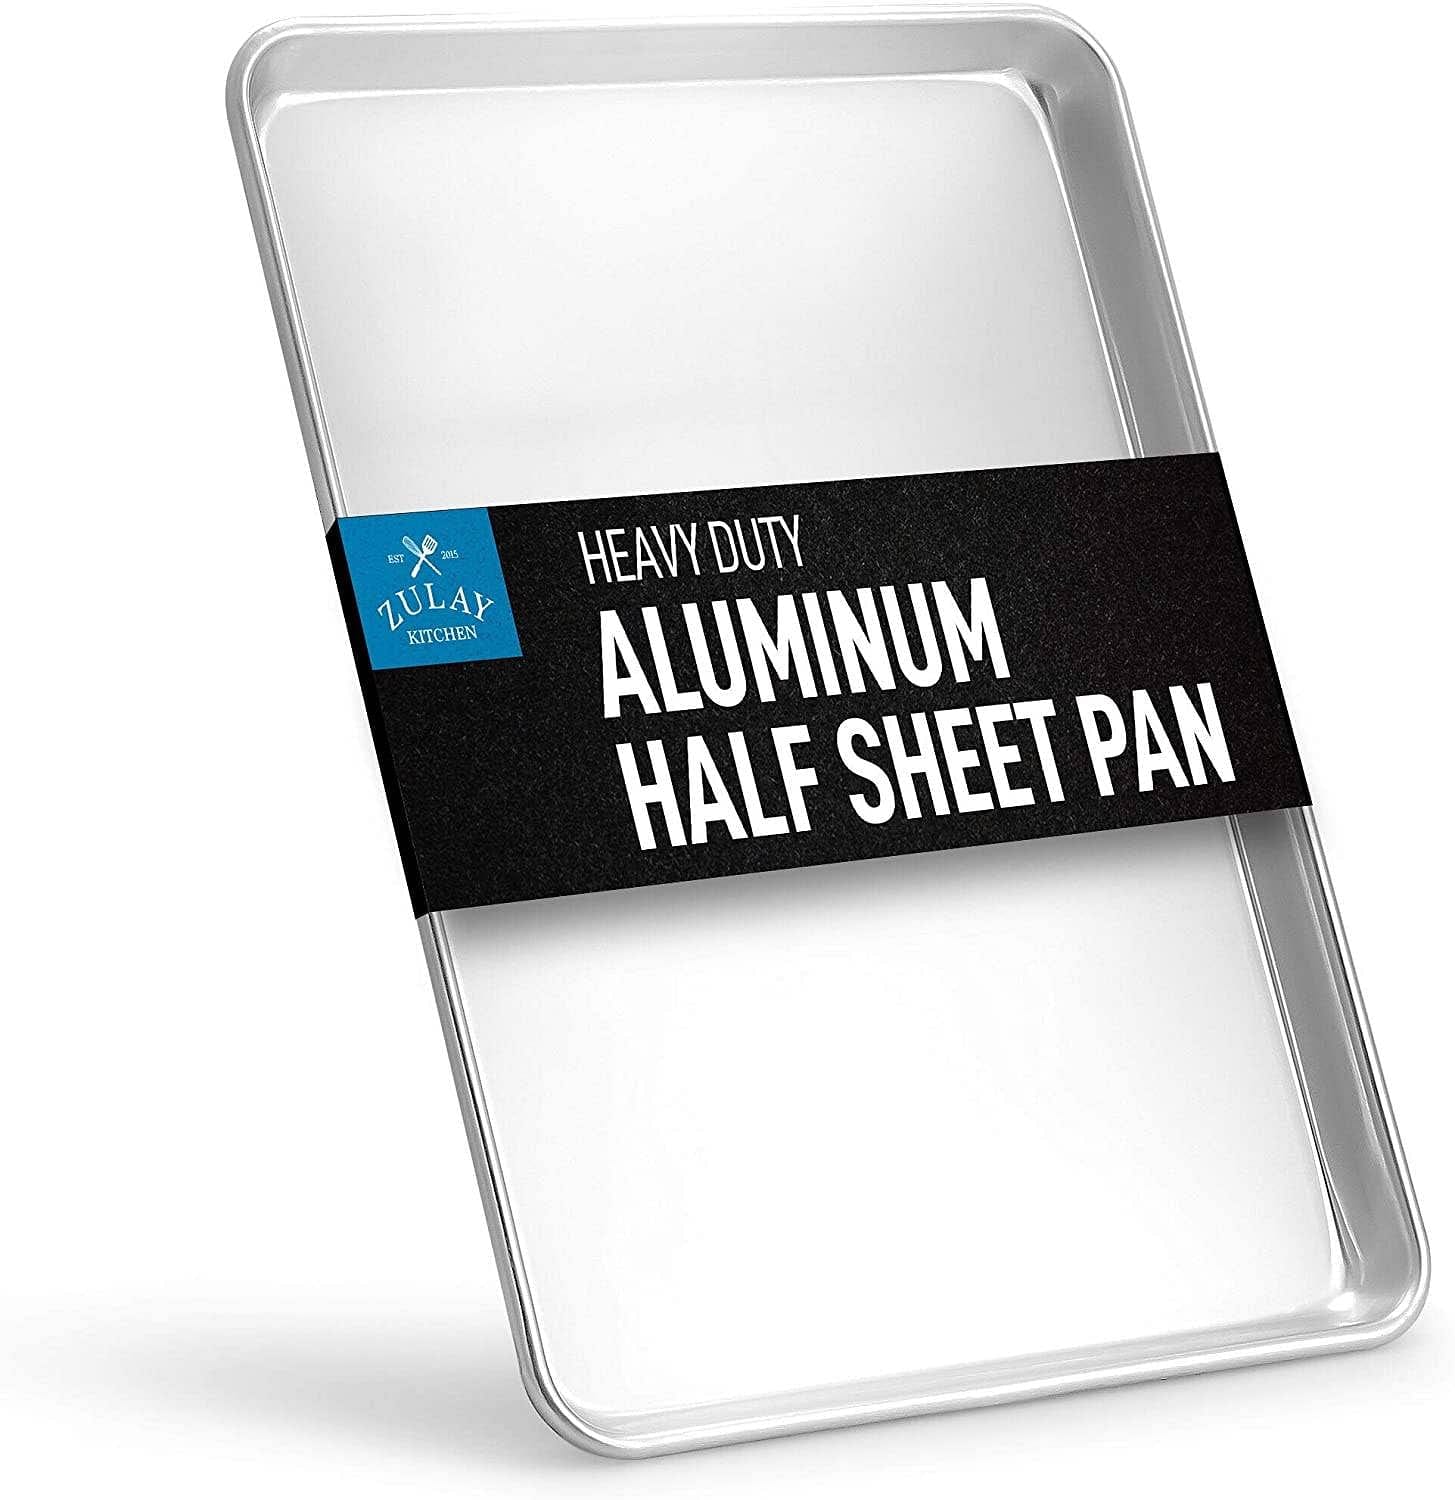 Half Sheet Pan